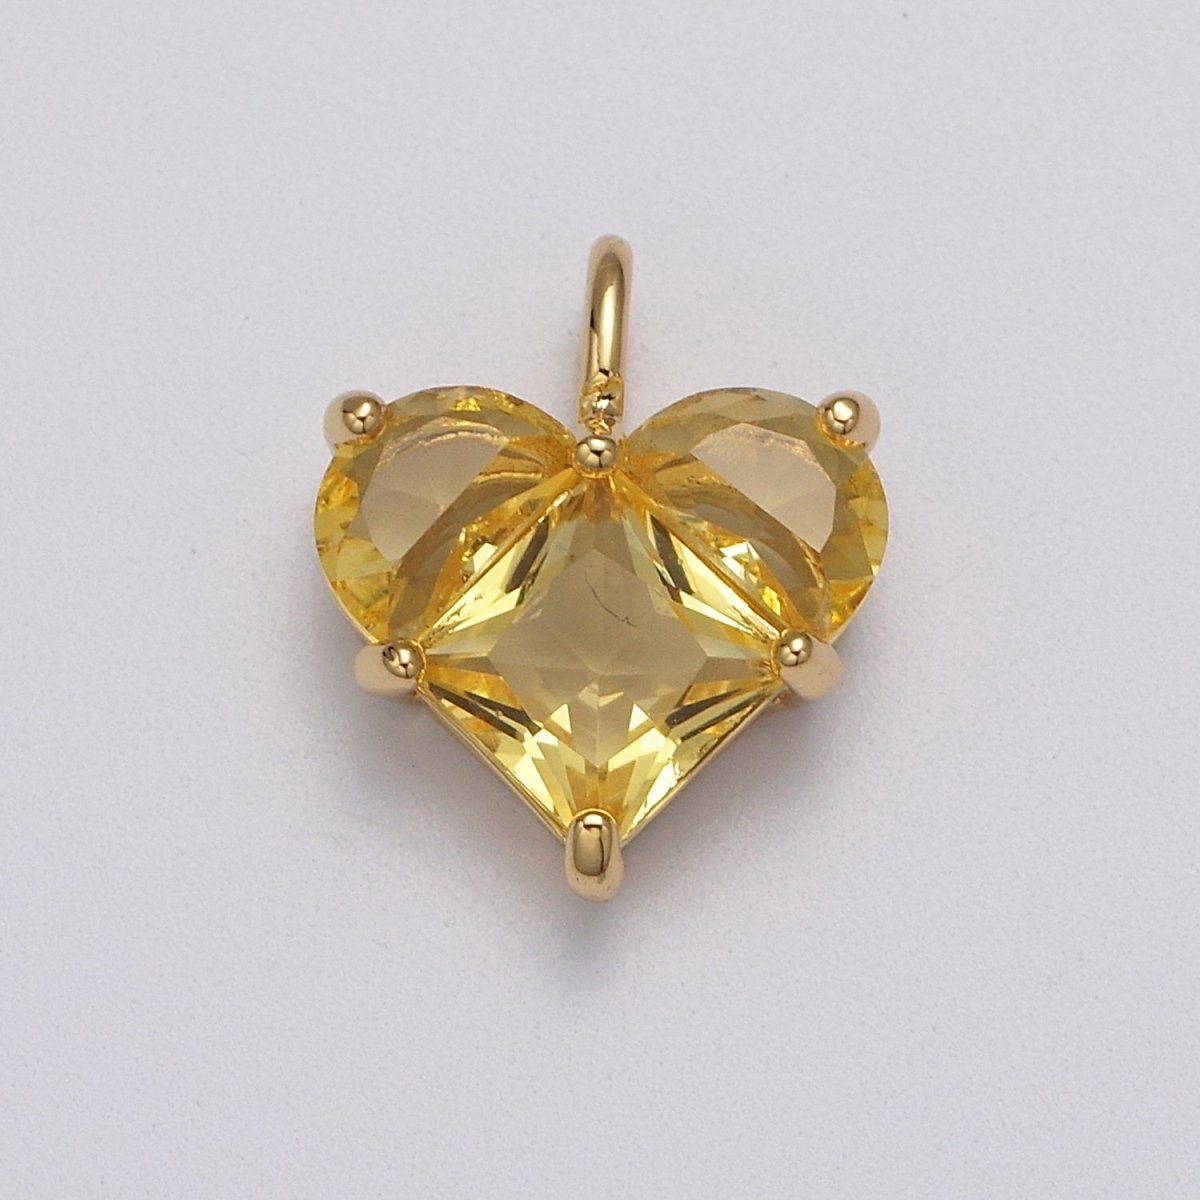 Dainty Heart Charm CZ Heart Pendant for Necklace Bracelet Earrings Charm, Dainty Charm Gold Plated Lead Nickel Free J-485 J-603 J-703 J-705 J-706 J-707 J-716 - DLUXCA